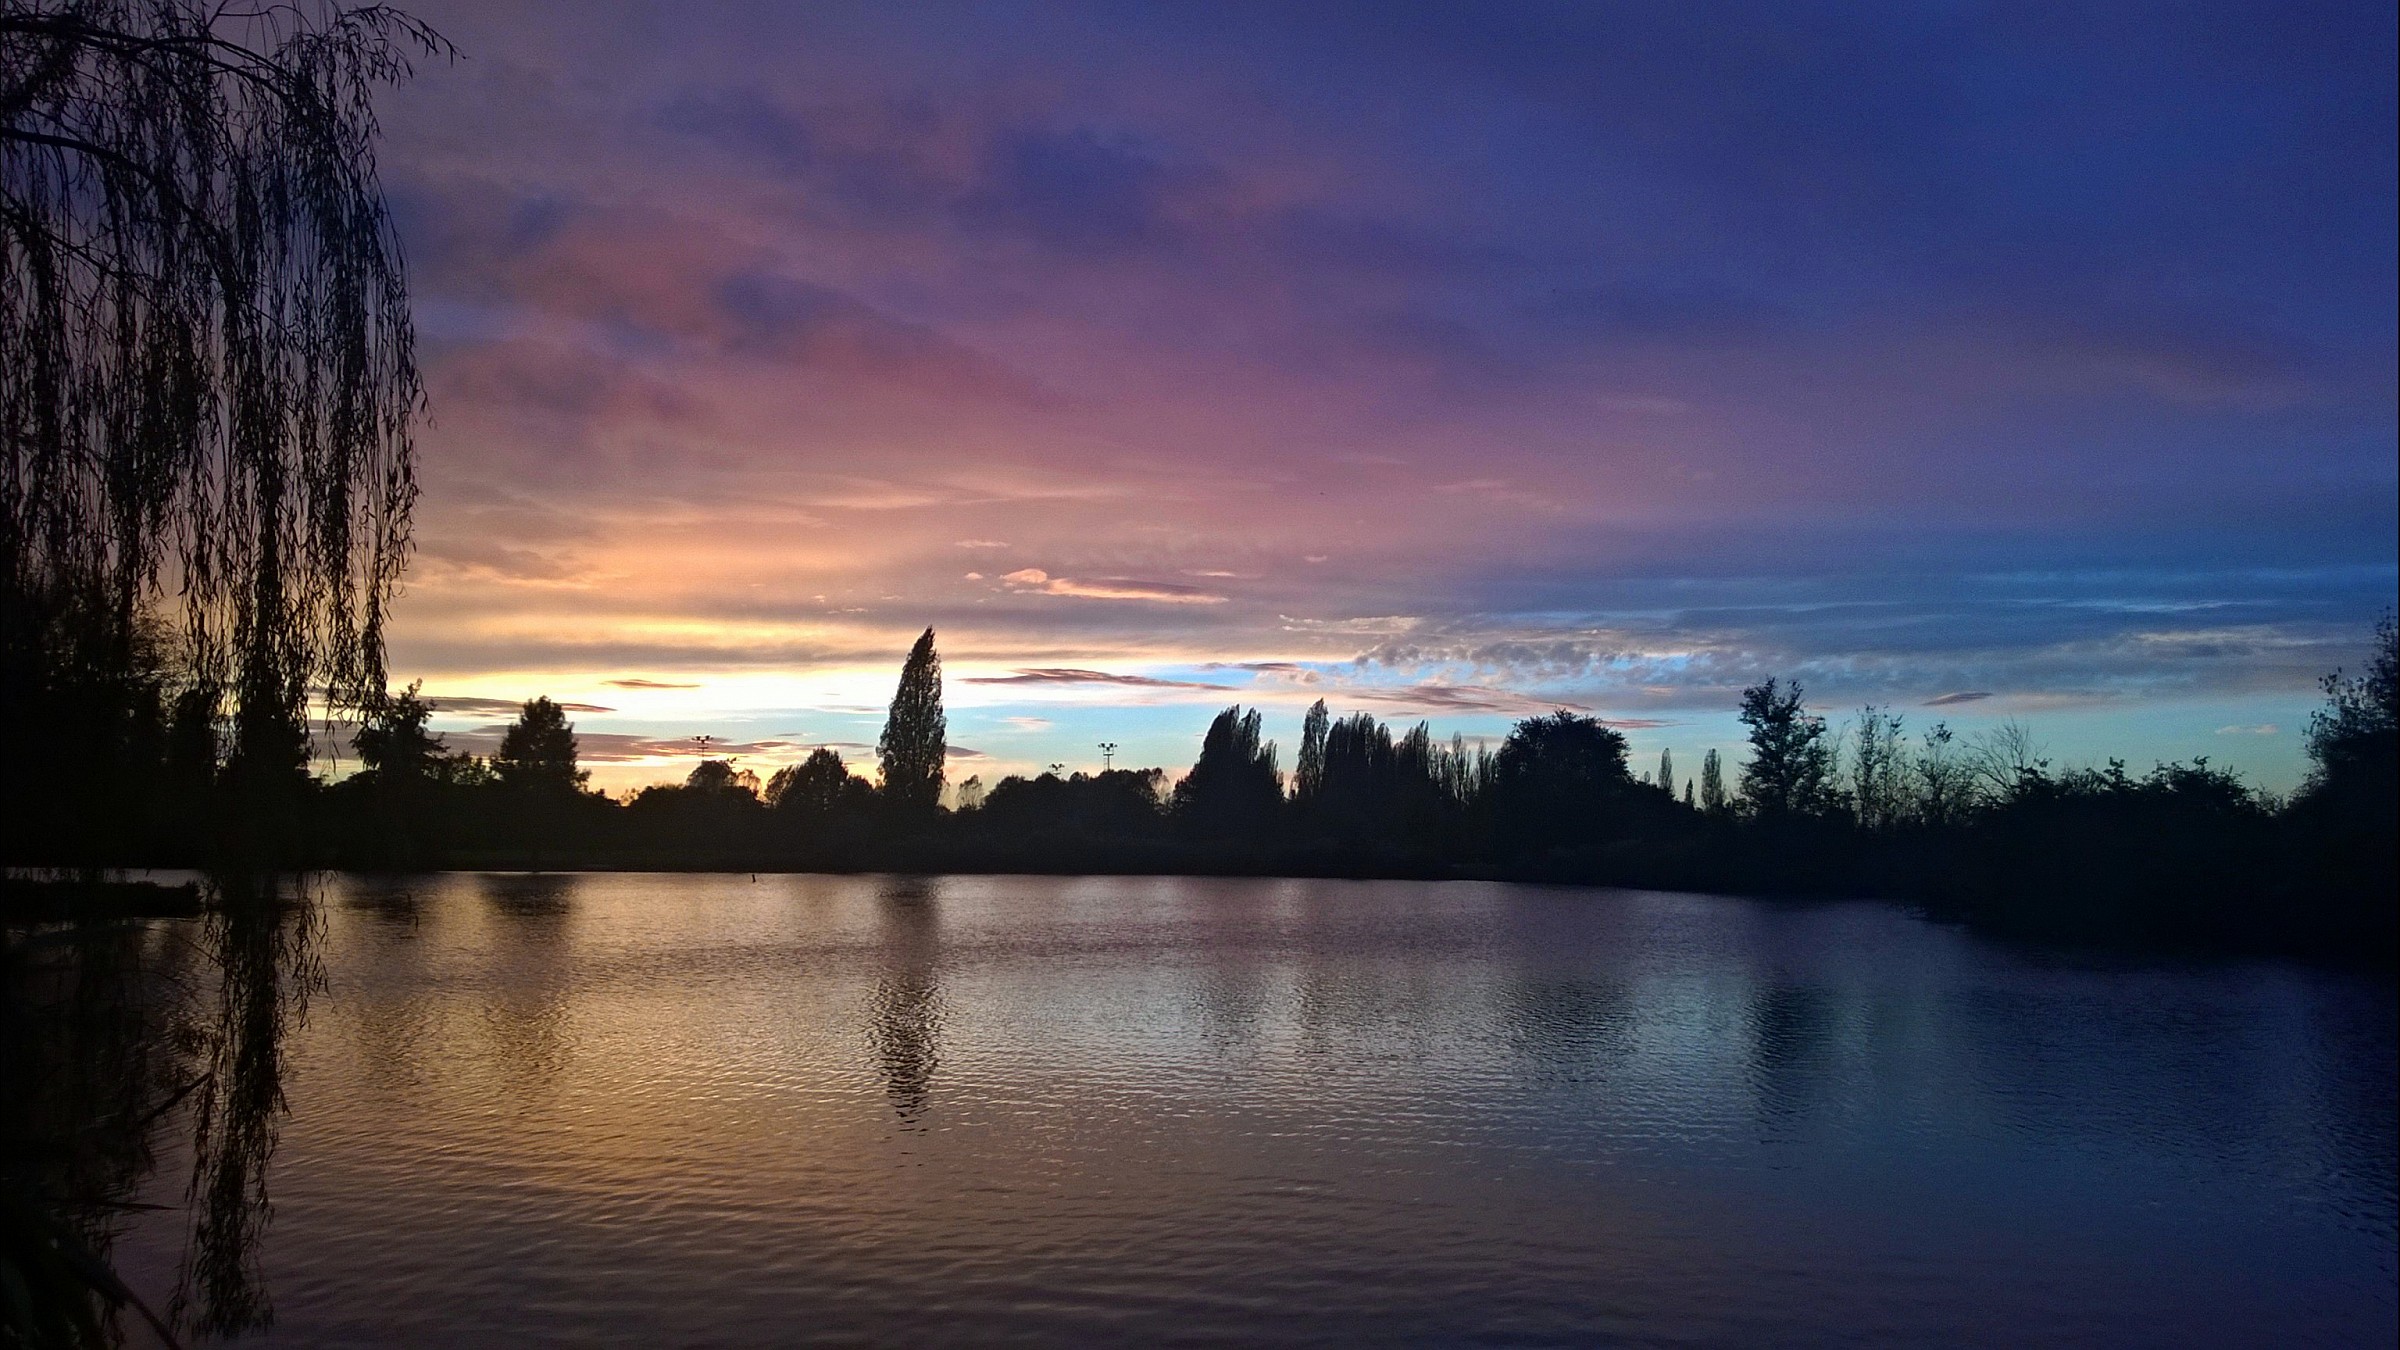 Sunset at the Urban Park, September 2014...